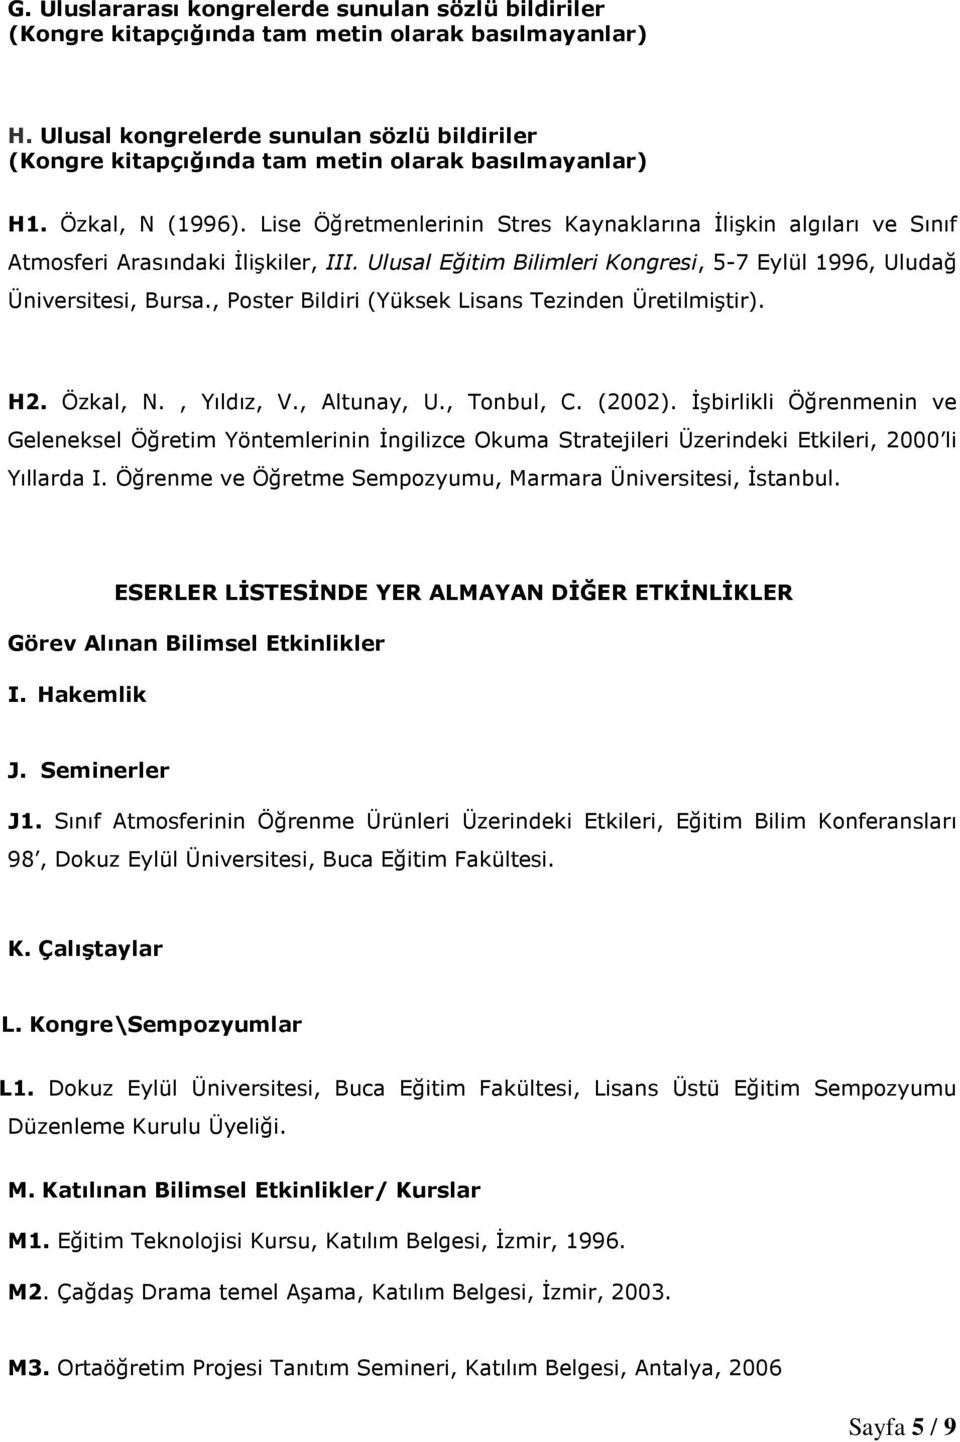 Lise Öğretmenlerinin Stres Kaynaklarına Đlişkin algıları ve Sınıf Atmosferi Arasındaki Đlişkiler, III. Ulusal Eğitim Bilimleri Kongresi, 5-7 Eylül 1996, Uludağ Üniversitesi, Bursa.